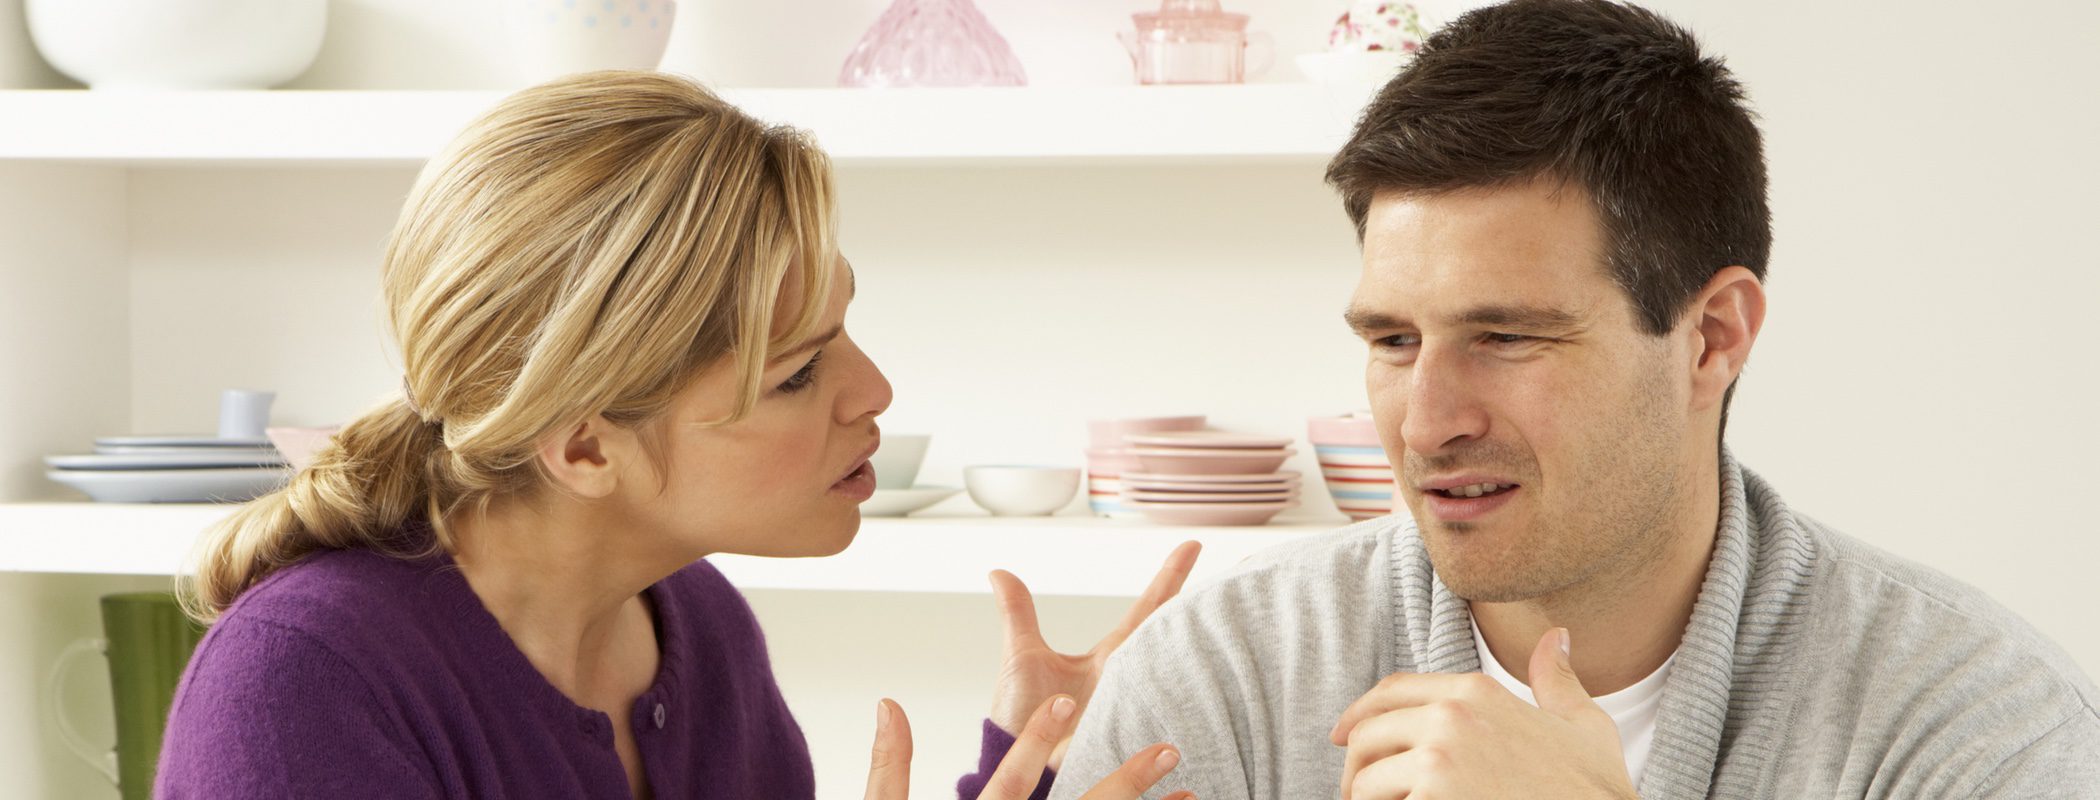 5 preguntas que nunca debes hacer a tu pareja si no quieres discutir